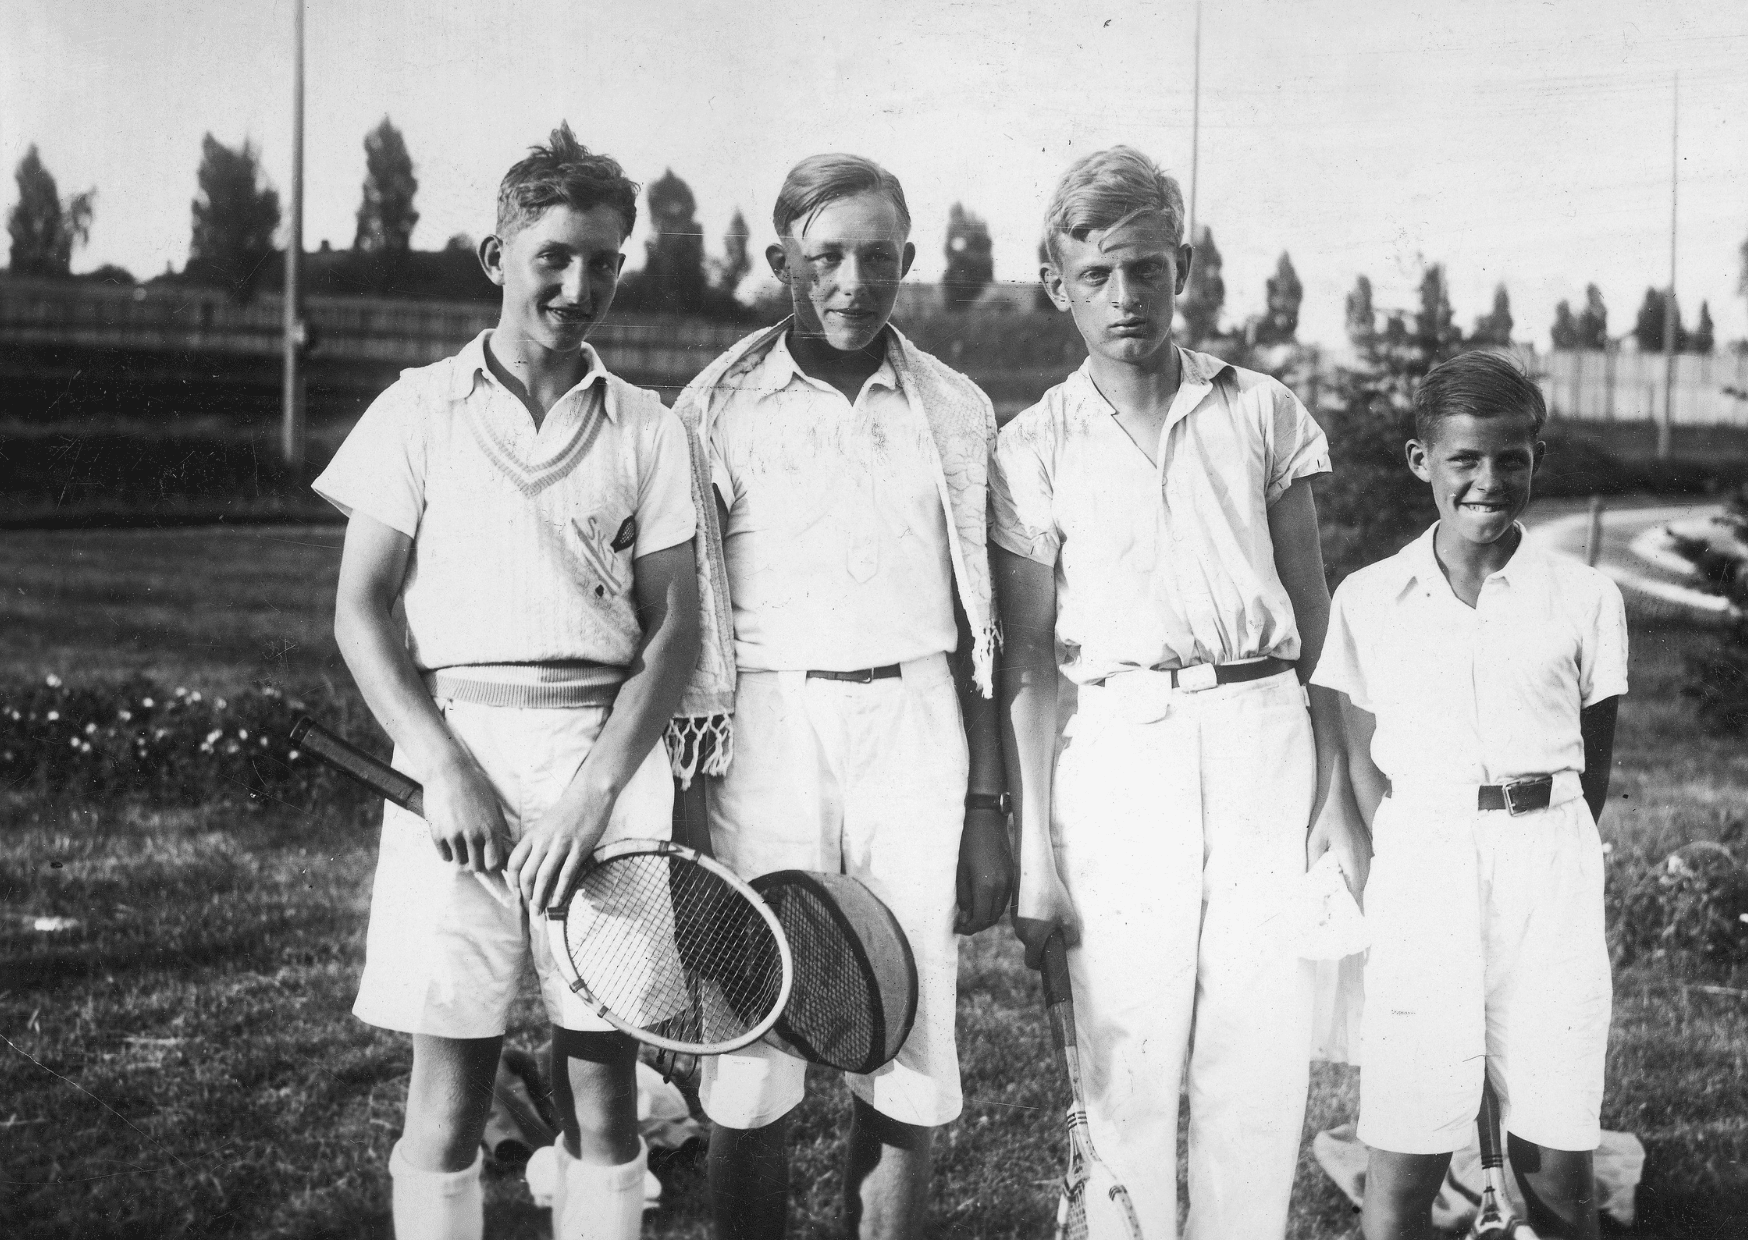 zdjęcie przedstawia młodzież z rakietami do tenisa